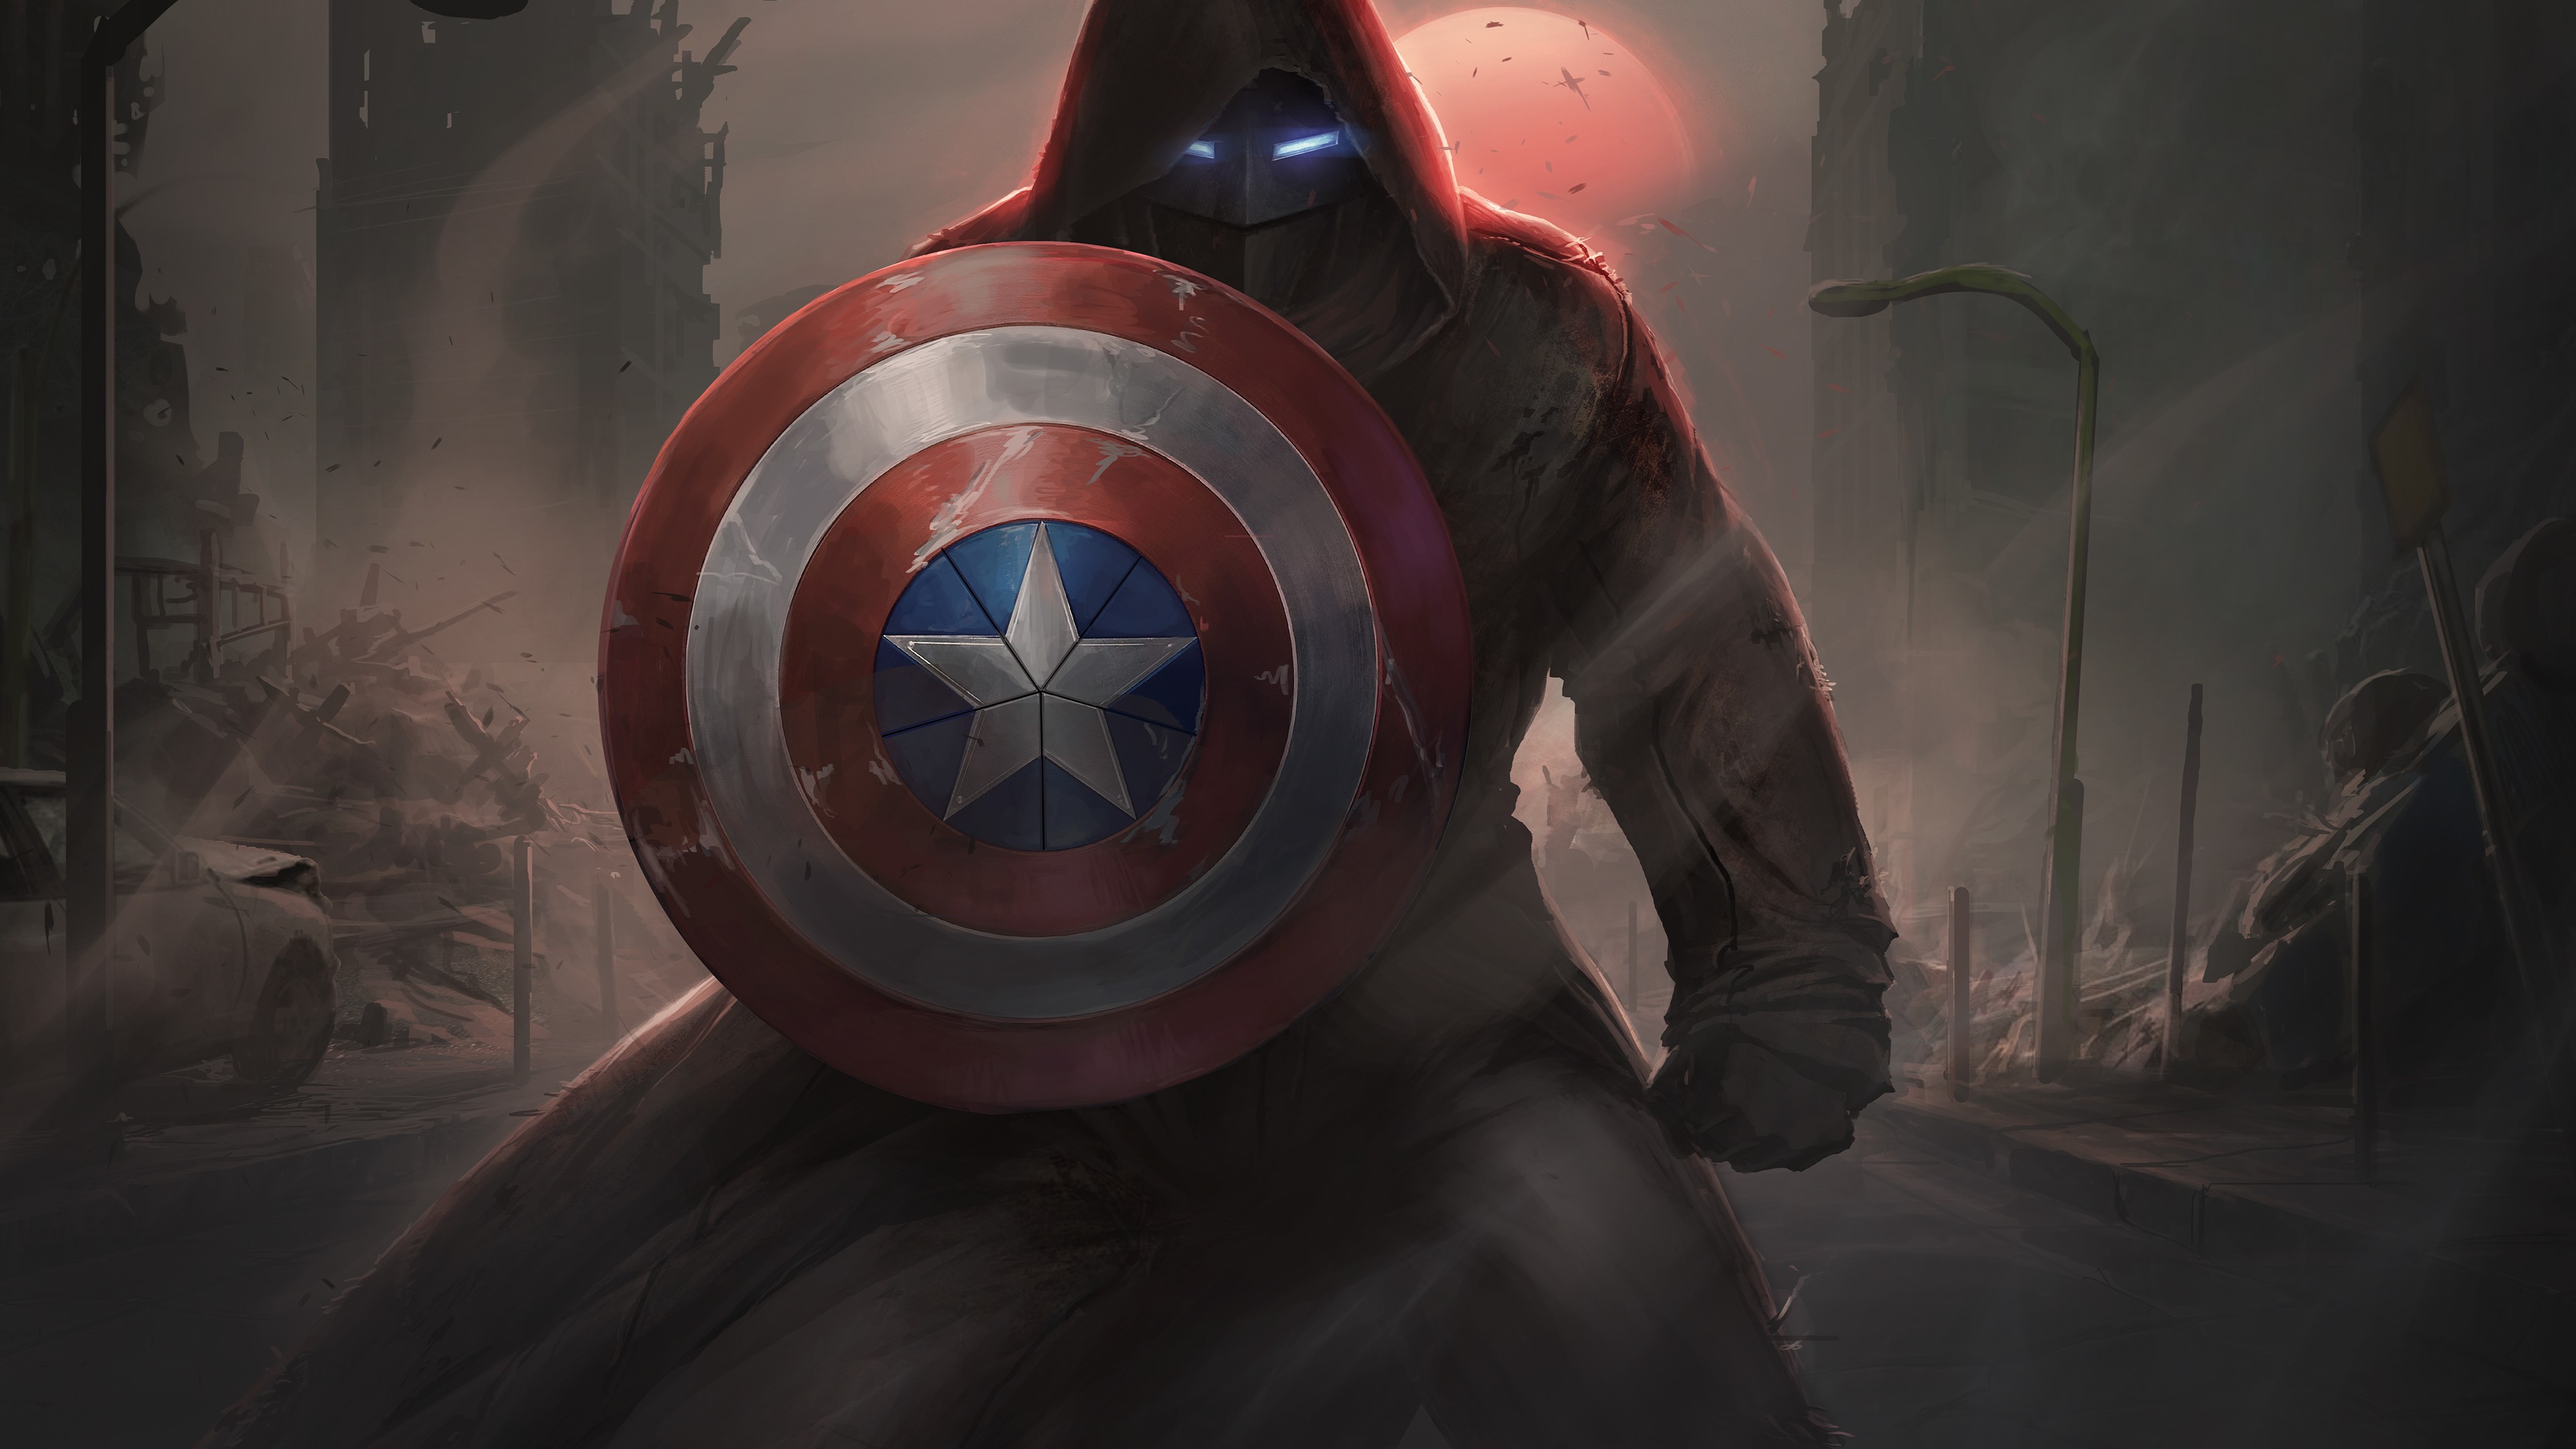 Marvel Captain America Shield Artwork 4K Wallpaper